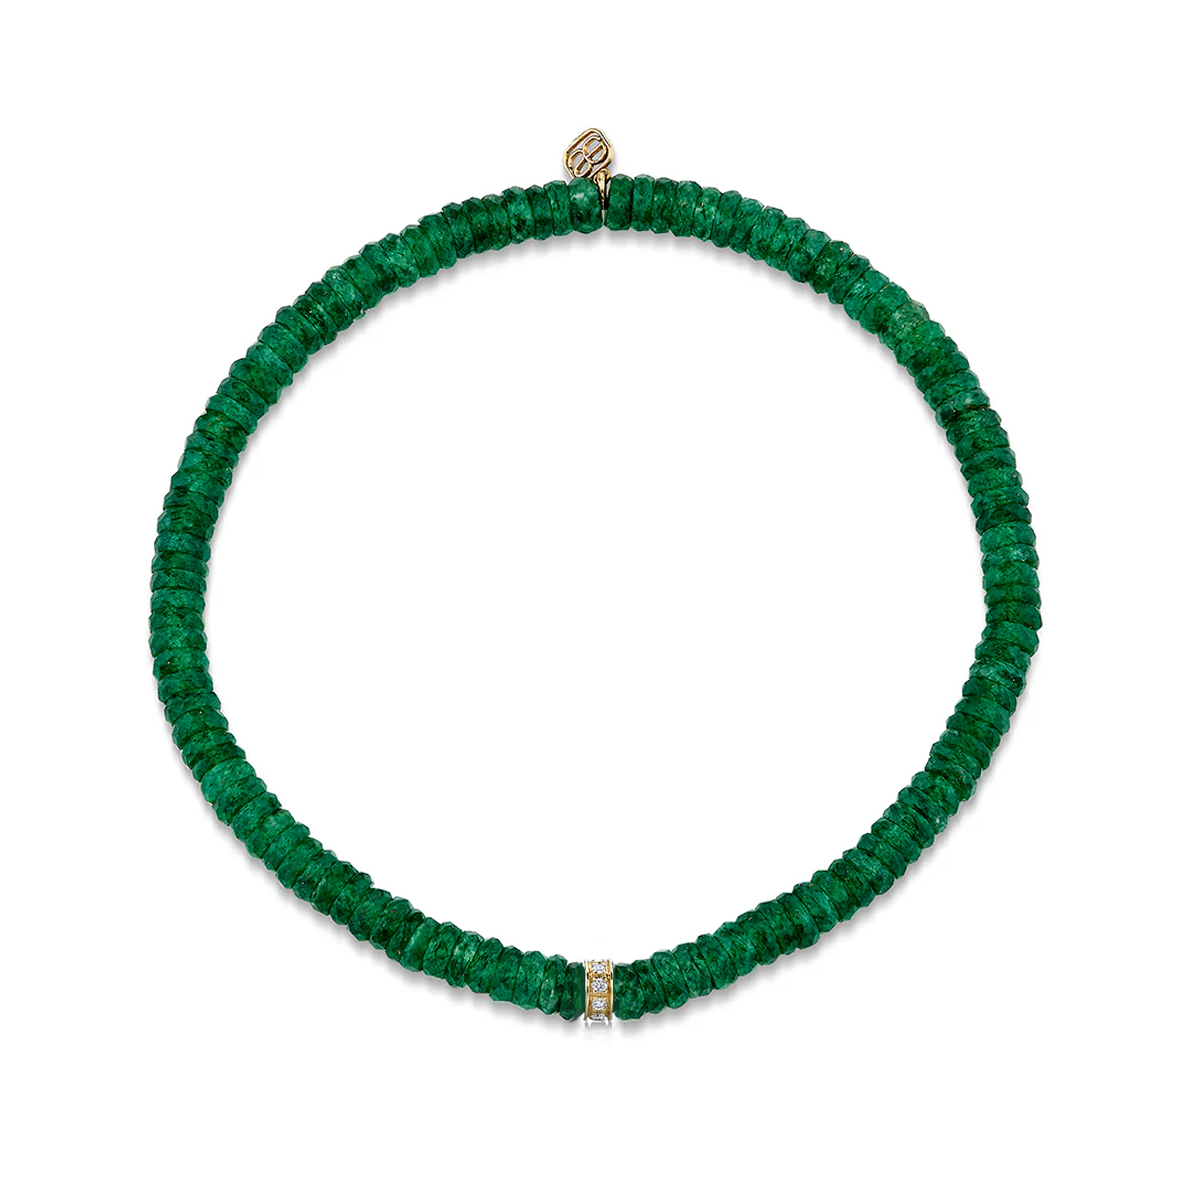 Green Aventurine Bead Bracelet with Diamond Rondelle